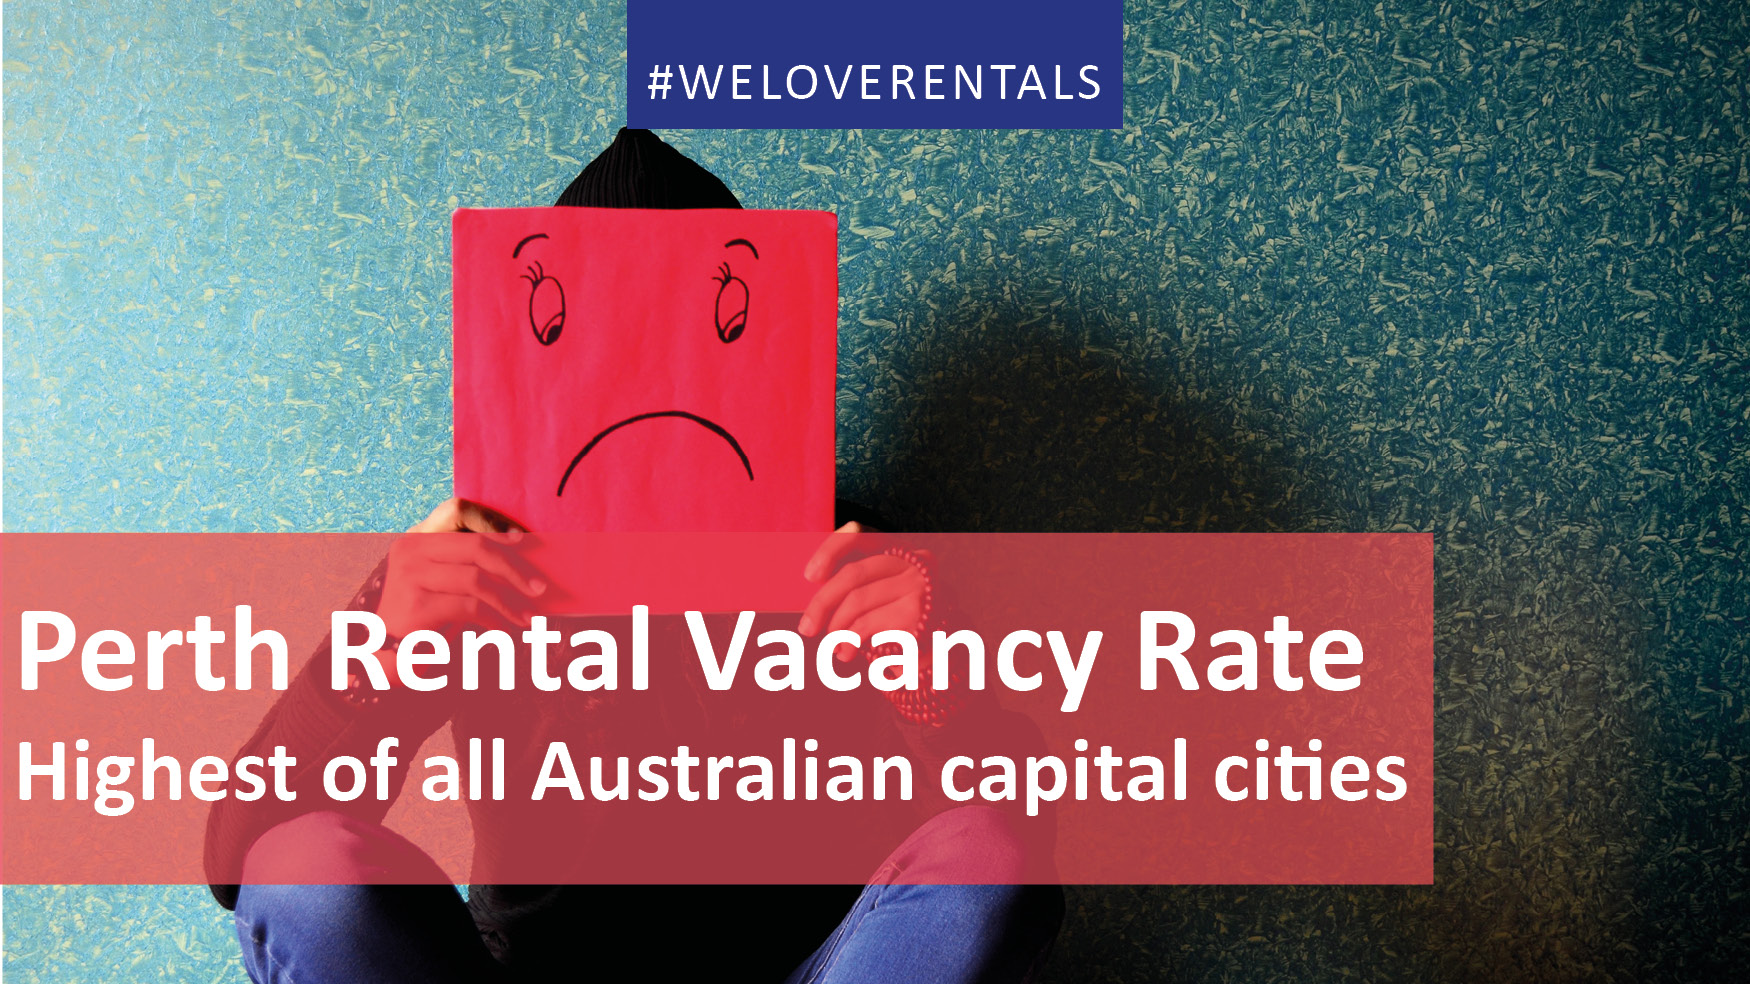 We Love Rentals Rental Vacancy Rate Perth Dec 2017